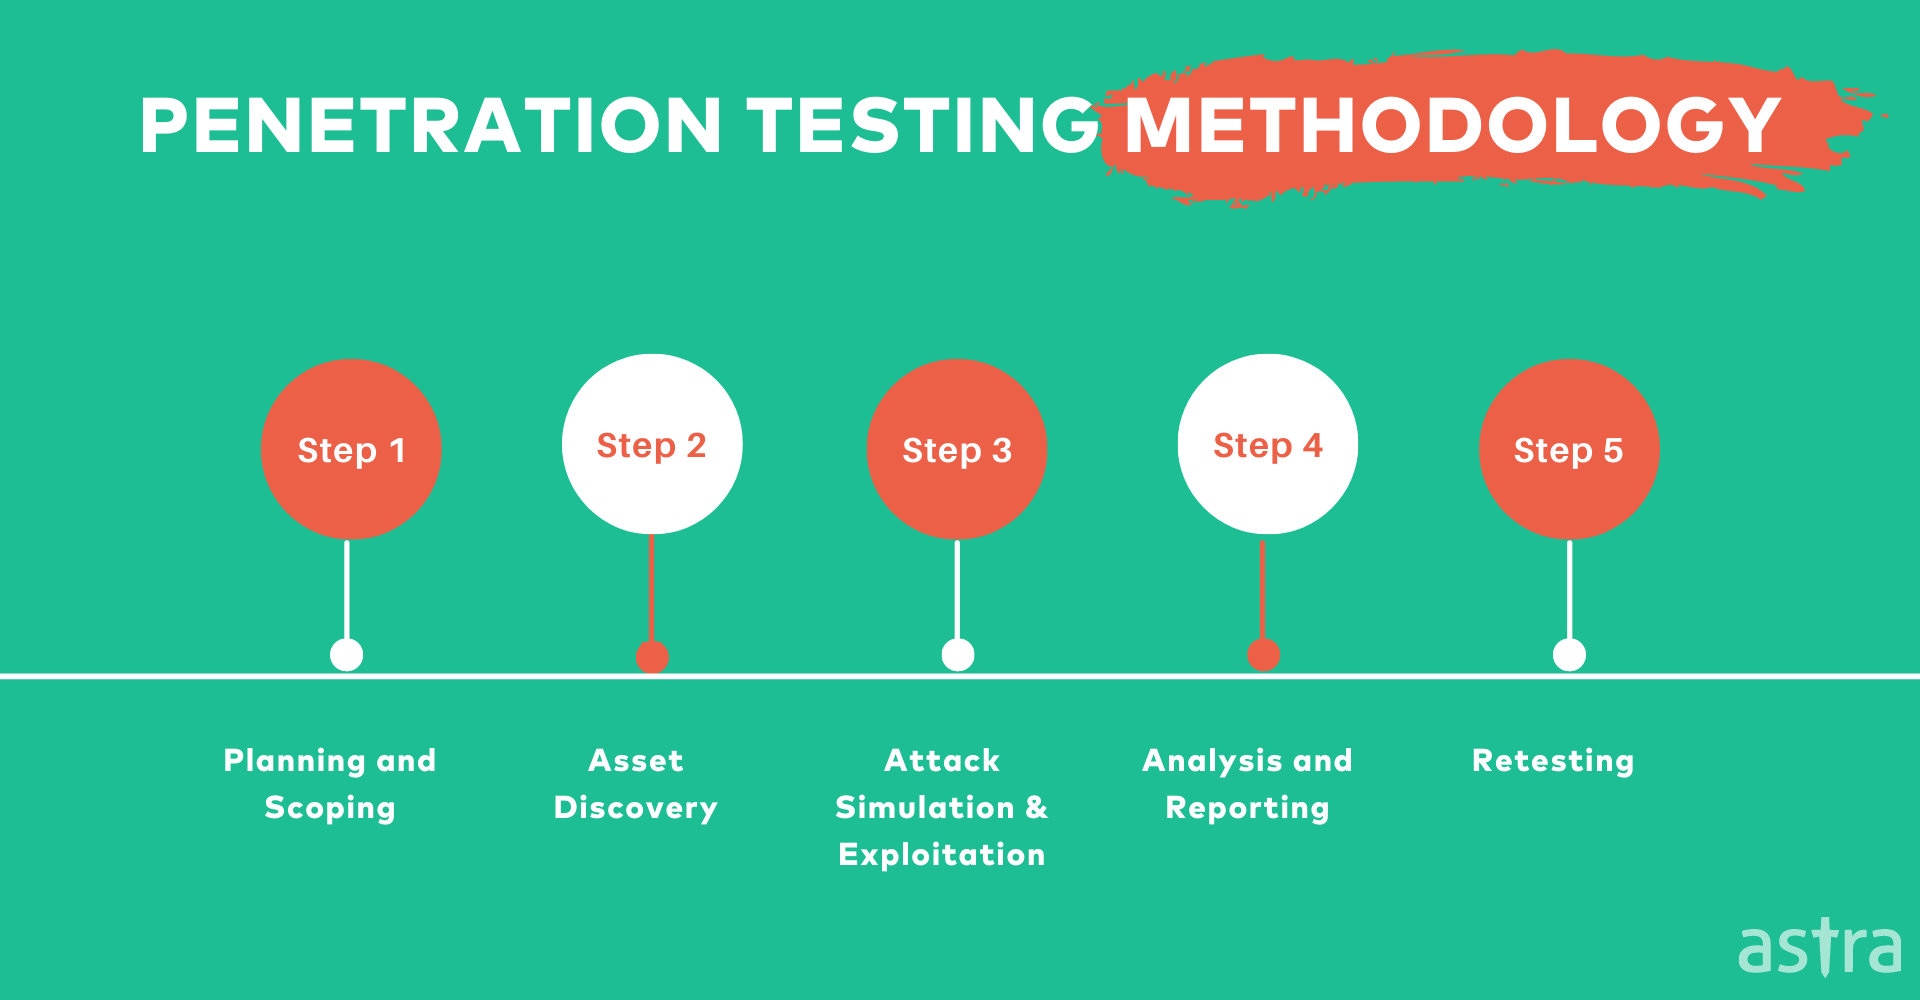 Explained steps in Penetration Testing Methodology